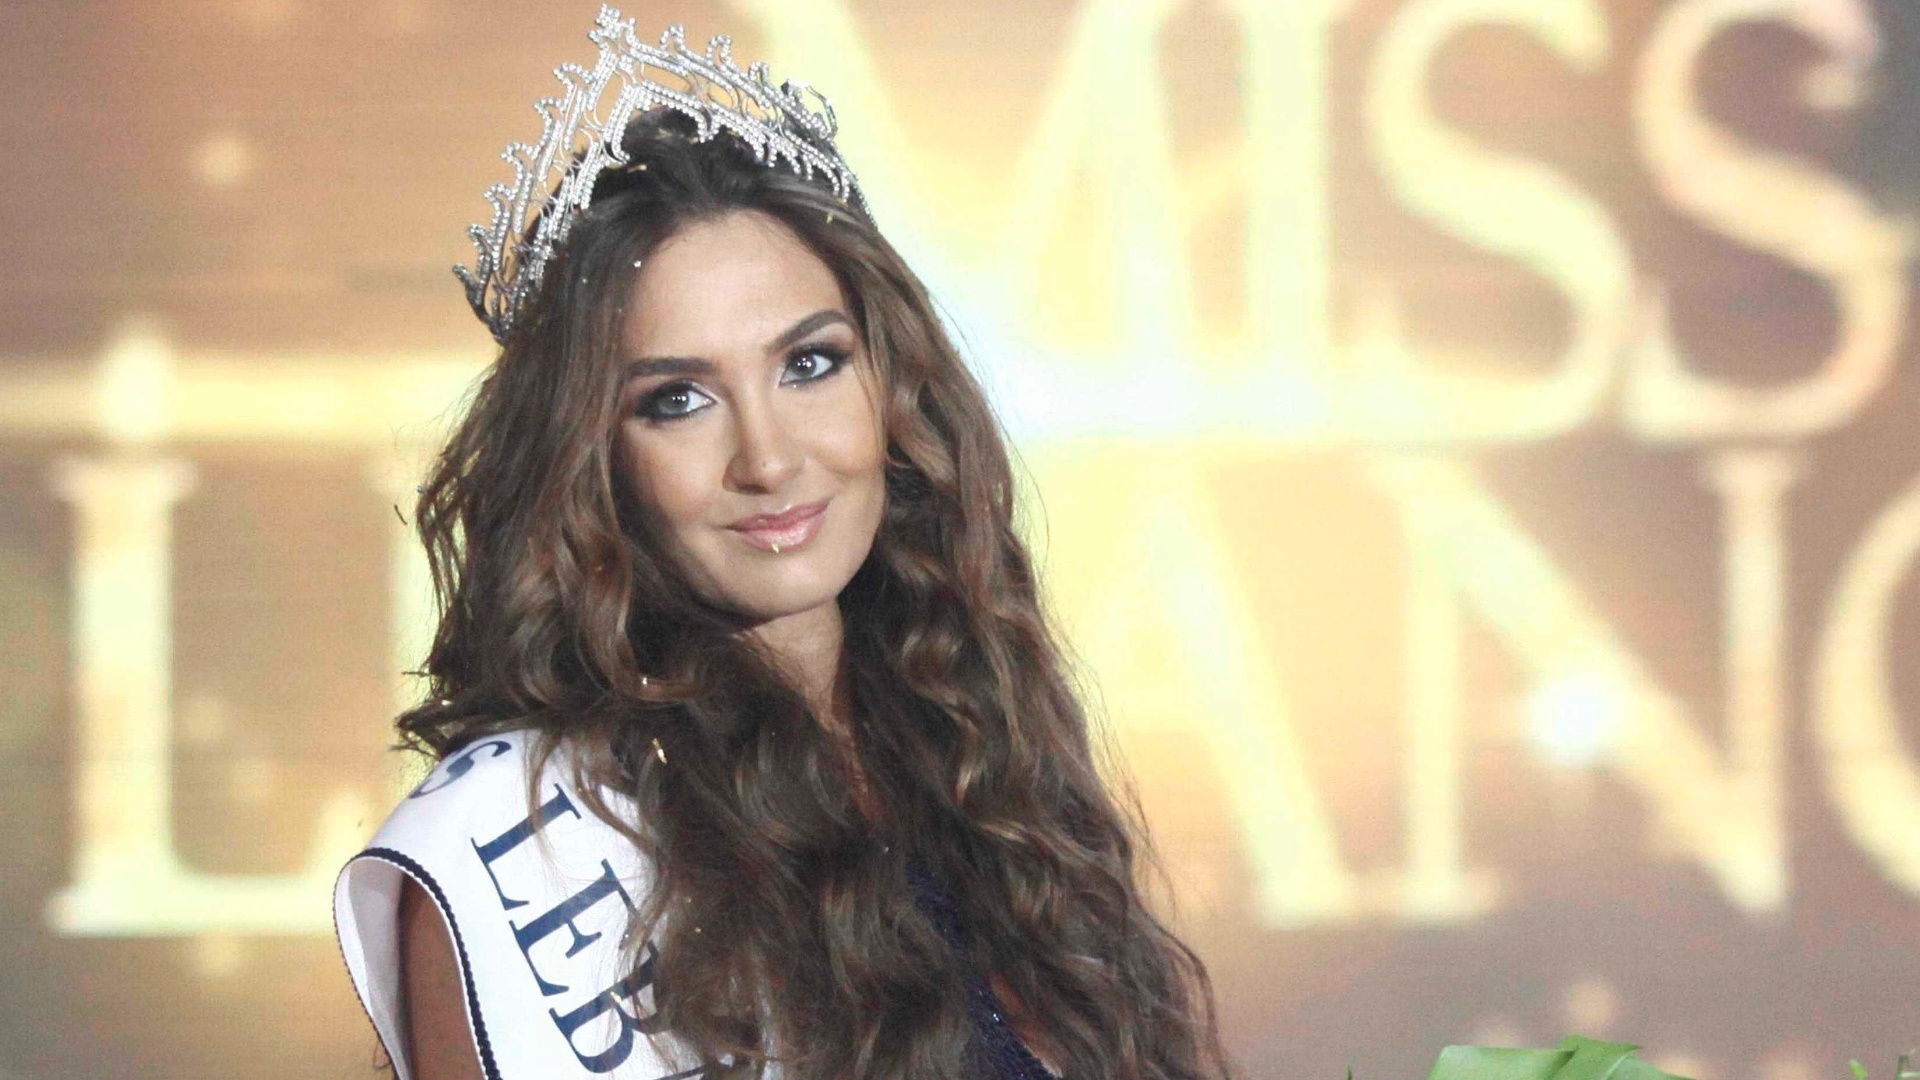 Fotos Conheça a vencedora do Miss Líbano 2012 02/10/2012 UOL Notícias